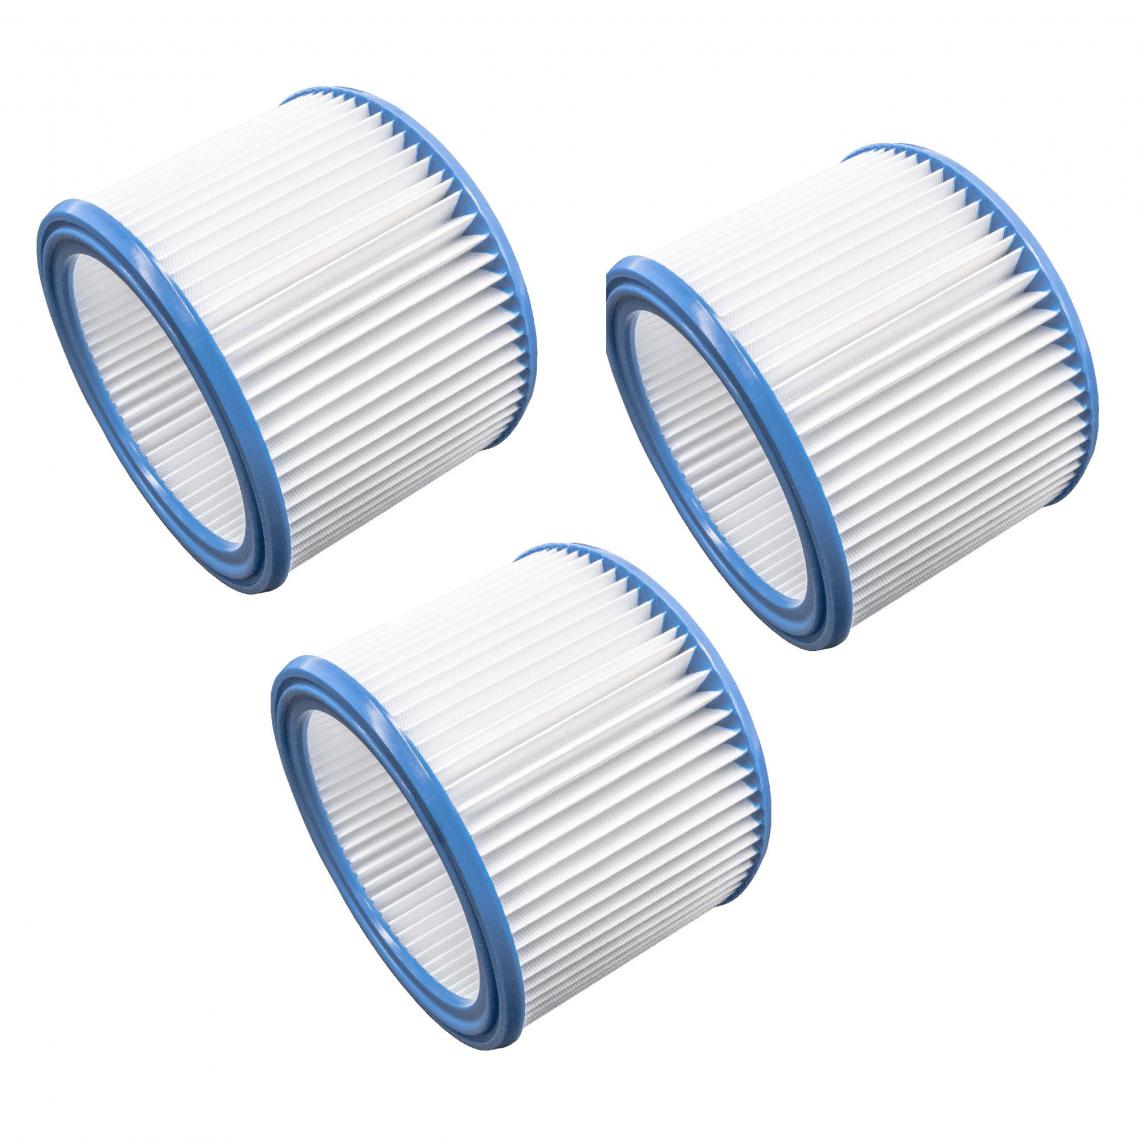 Vhbw - vhbw Set de filtres 3x Filtre plissé compatible avec Nilfisk / Alto / Wap Attix 751-11, 751-21, 751-2M aspirateur à sec ou humide - Filtre à cartouche - Accessoire entretien des sols